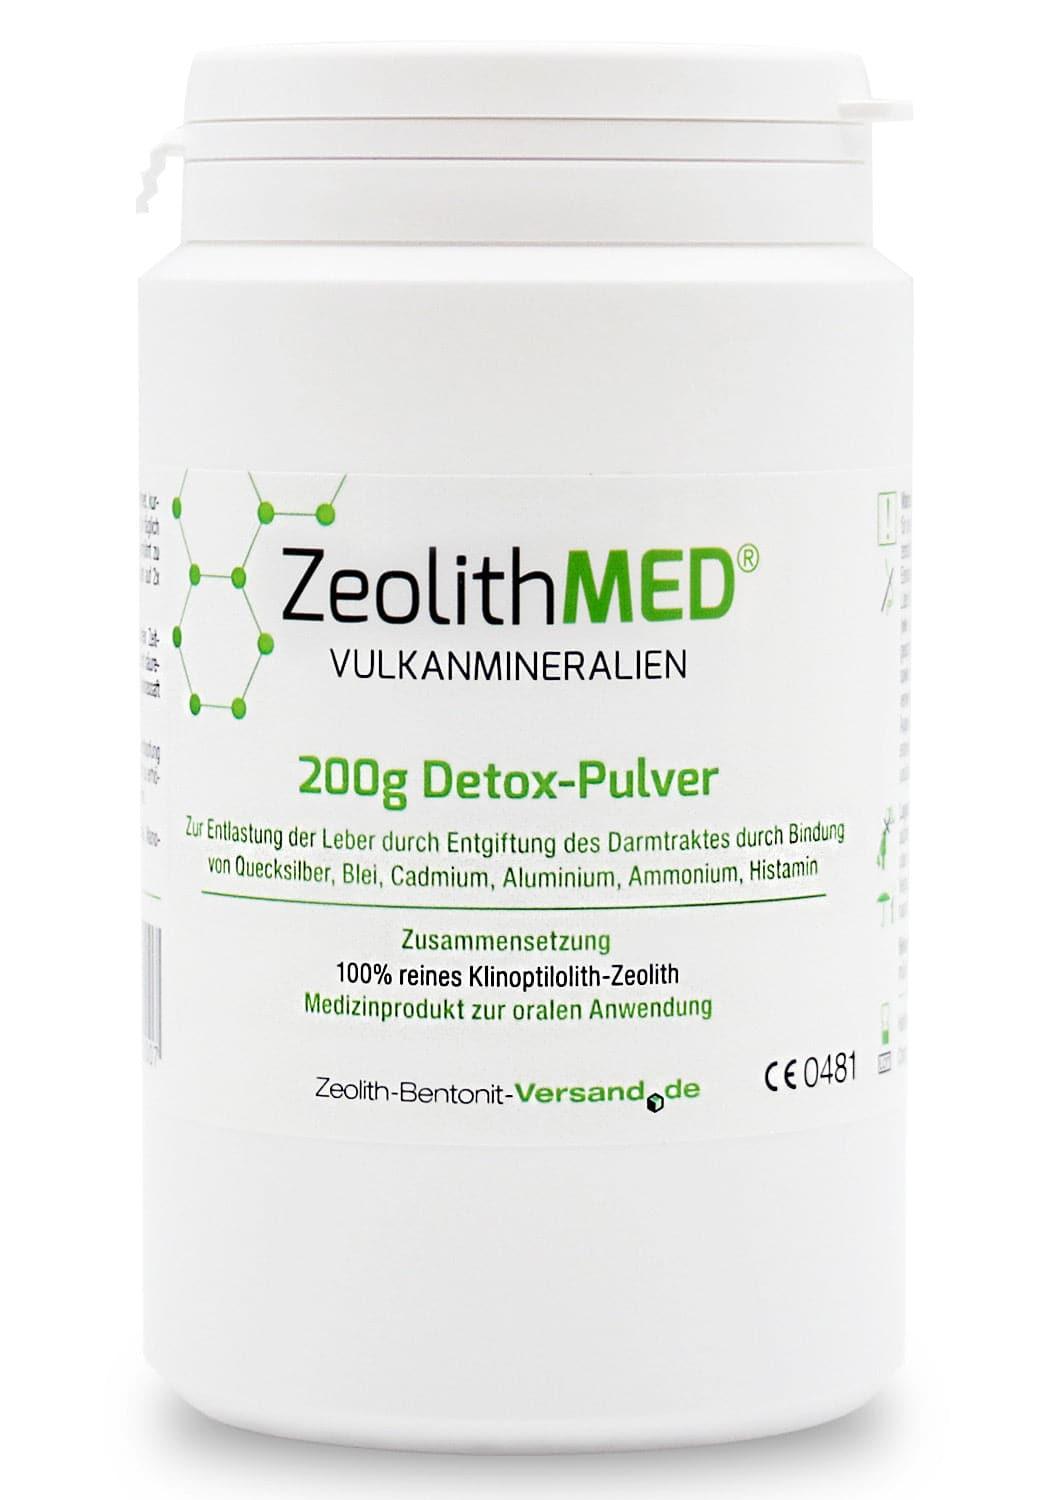 Zeolith MED - Zeloith-Bentonit - Alter:Adult, Darreichungsform:Pulver, Ergänzungsfuttermittel:Verdauung, Tierart:Hund, Tierart:Katze - Marigin AG Onlineshop für Tierbedarf